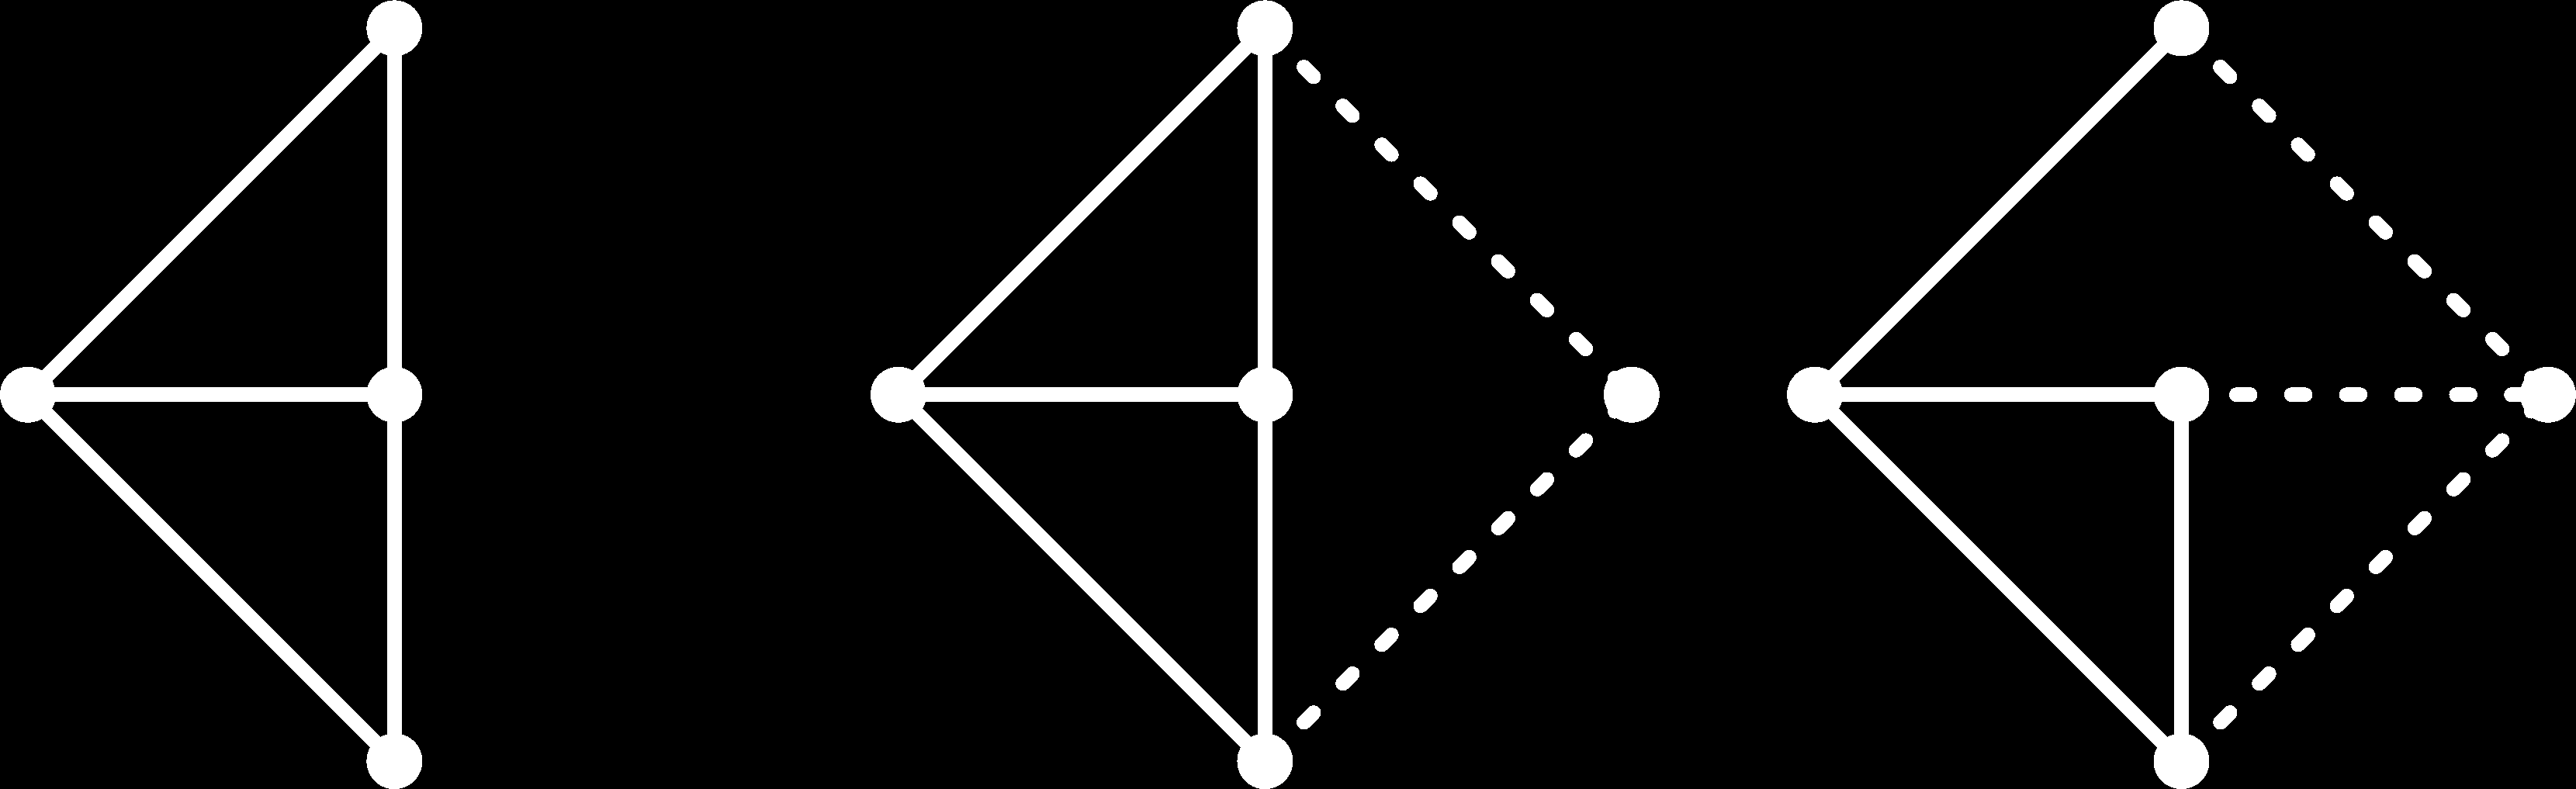 Henneberg konstrukció Algoritmus Kiindulunk egy élb l és minden lépésben egy új csúcsot adunk a gráfhoz az alábbi lépések valamelyikével: I. az új csúcsot két éllel kapcsoljuk két régi csúcshoz II.